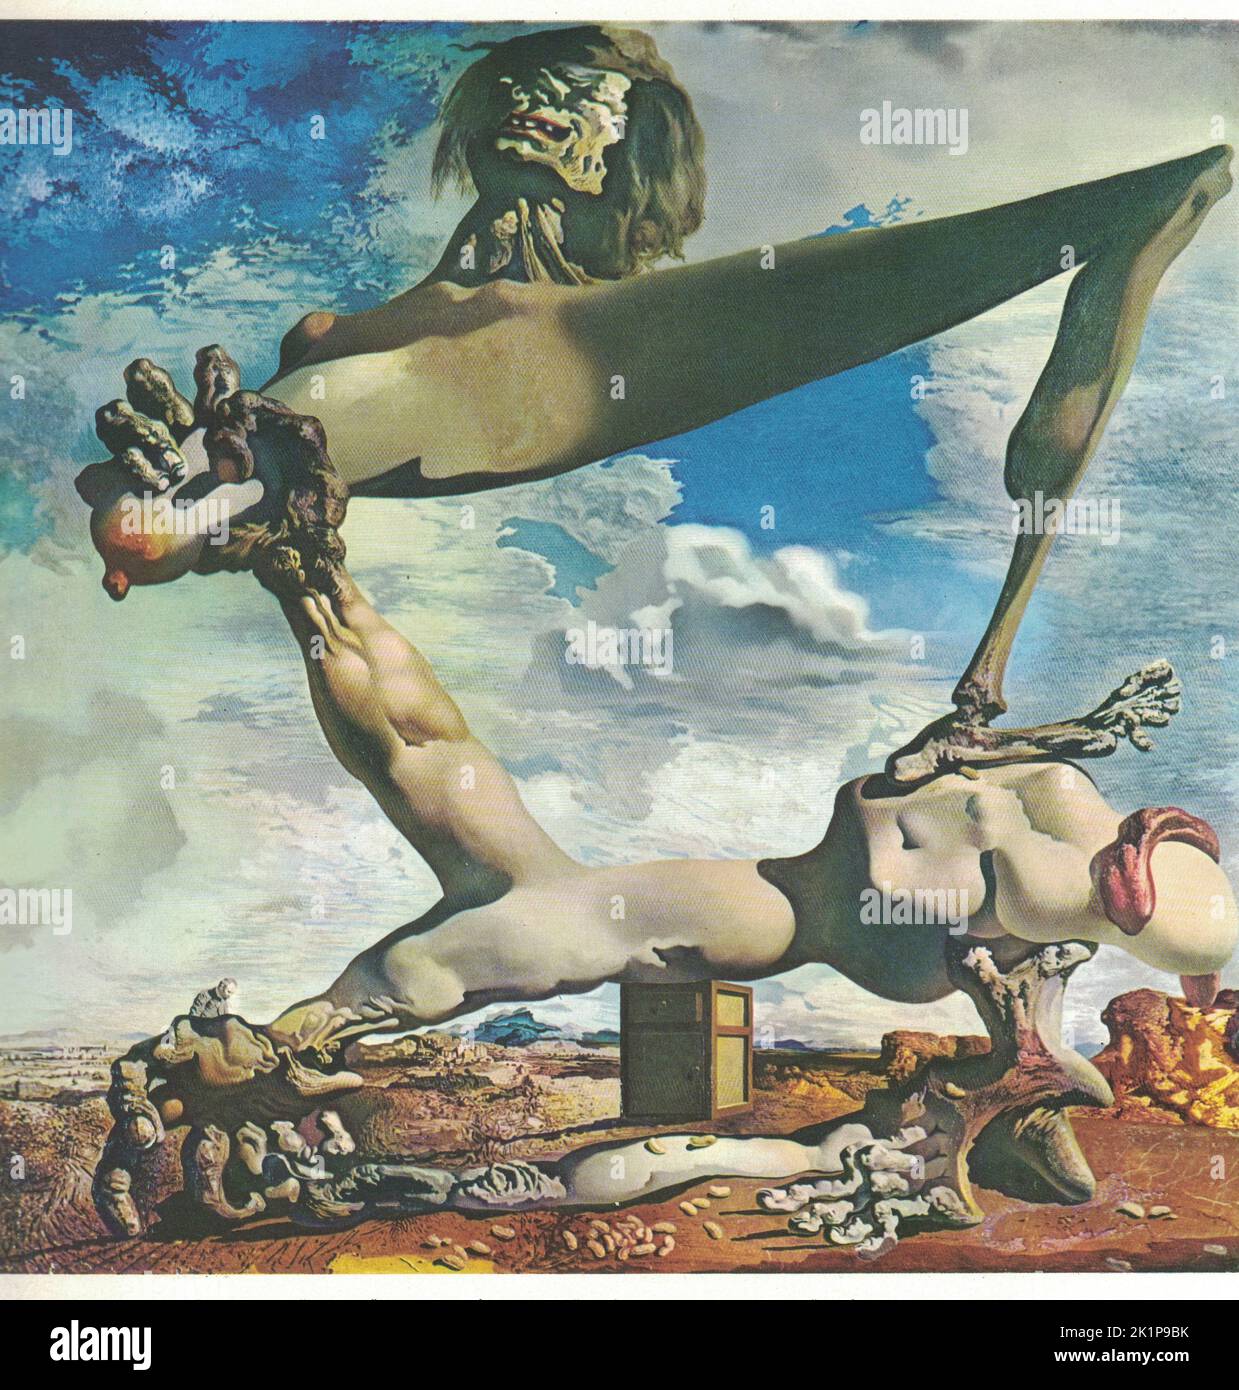 Prémonition de la guerre civile (Soft Construction with bouilli Beans) ,1936, huile sur toile. Peinture de Salvador Dali. Salvador Dalí (11 mai 1904 – 23 janvier 1989) était un artiste surréaliste espagnol renommé pour ses compétences techniques, son art du dessin précis et ses images frappantes et bizarres. Né à Figueres, en Catalogne, en Espagne, Dalí a reçu une formation formelle en beaux-arts à Madrid. Influencé par l'impressionnisme et les maîtres de la Renaissance depuis un jeune âge, il est devenu de plus en plus attiré par le cubisme et les mouvements d'avant-garde. Il s'est rapproché de Surréalisme à la fin de 1920s et a rejoint le sur Banque D'Images